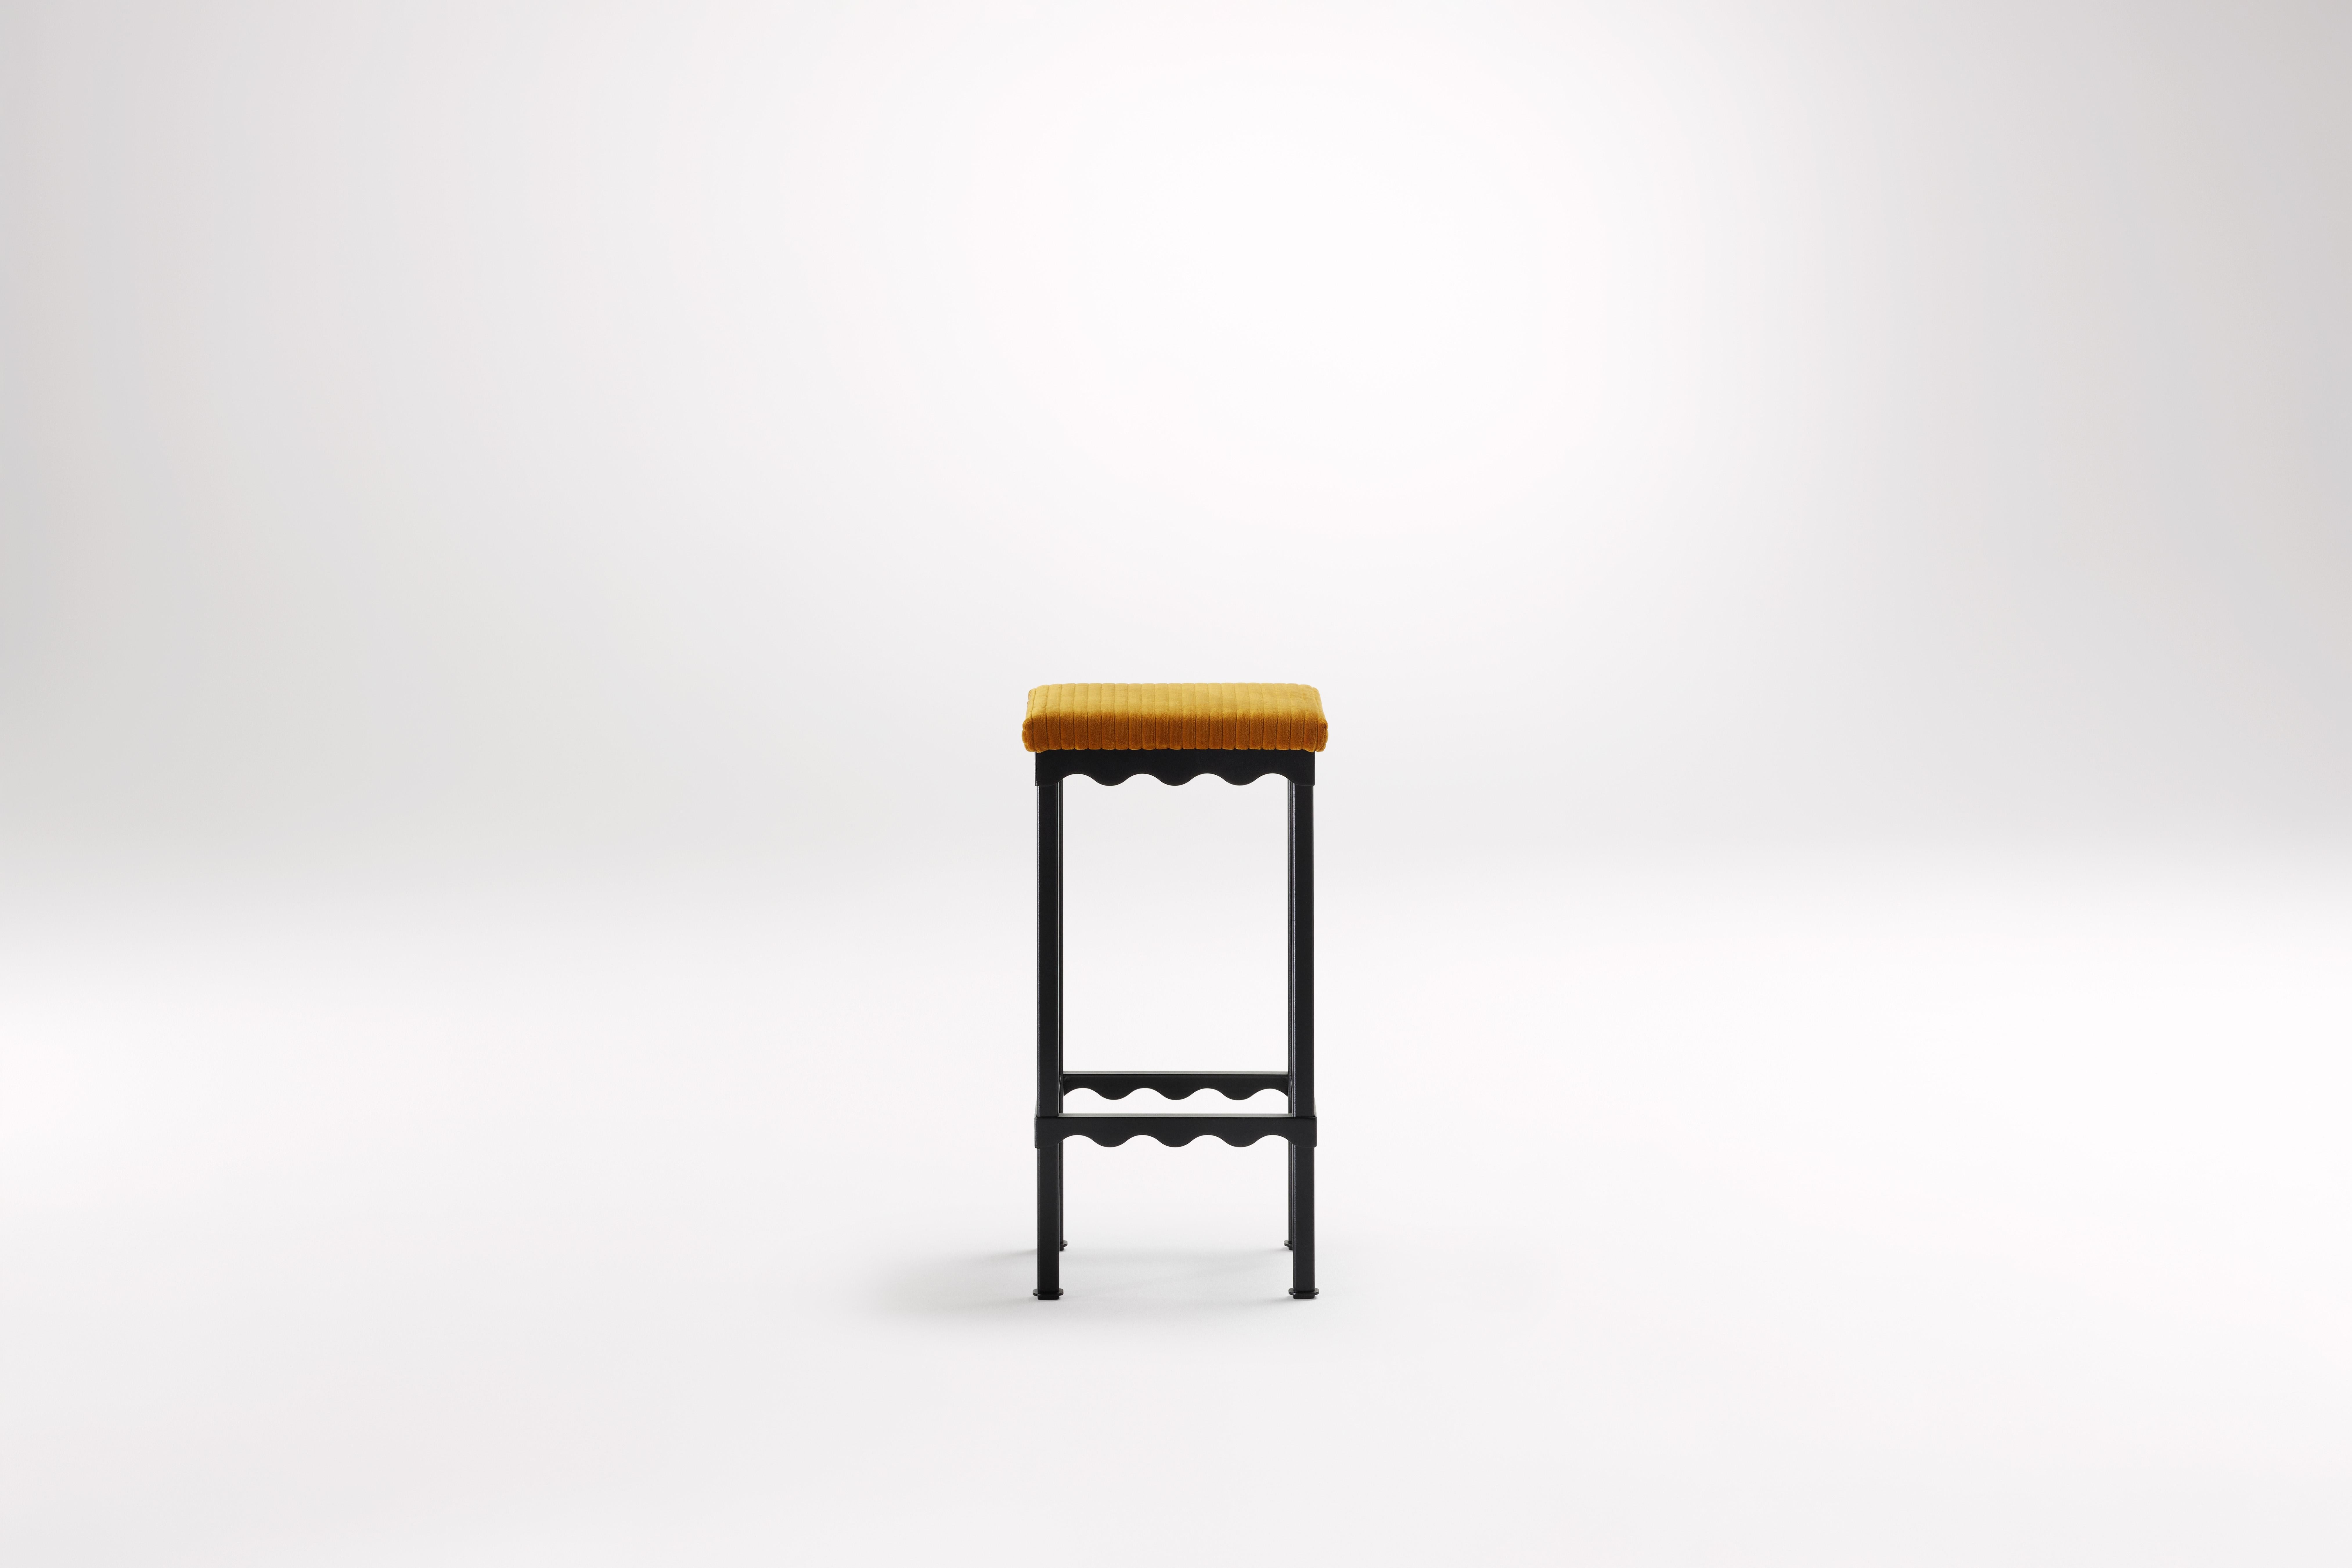 Tabouret haut Mikado Bellini par Coco Flip
Dimensions : D 34 x L 34 x H 65/75 cm
Matériaux : Plateaux en bois / pierre, cadre en acier peint par poudrage. 
Poids : 8 kg
Finitions du cadre : Noir Textura.

Coco Flip est un studio de design de meubles